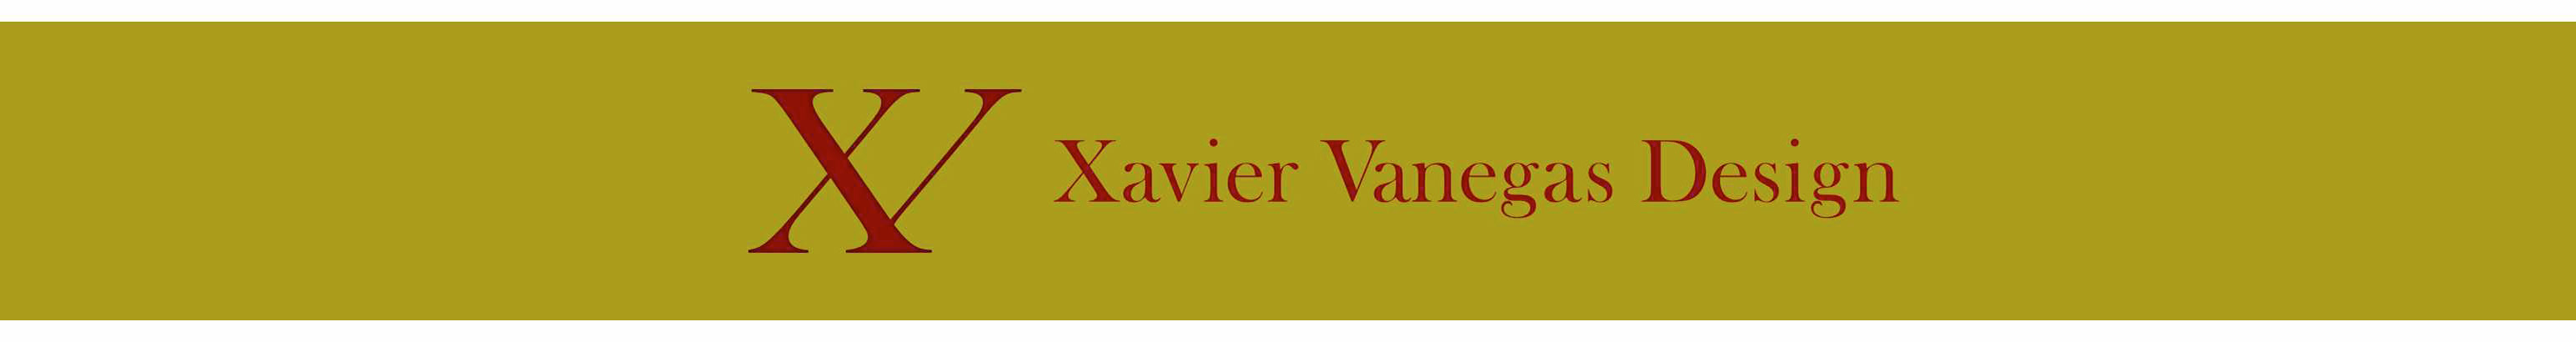 Xavier Vanegas's profile banner